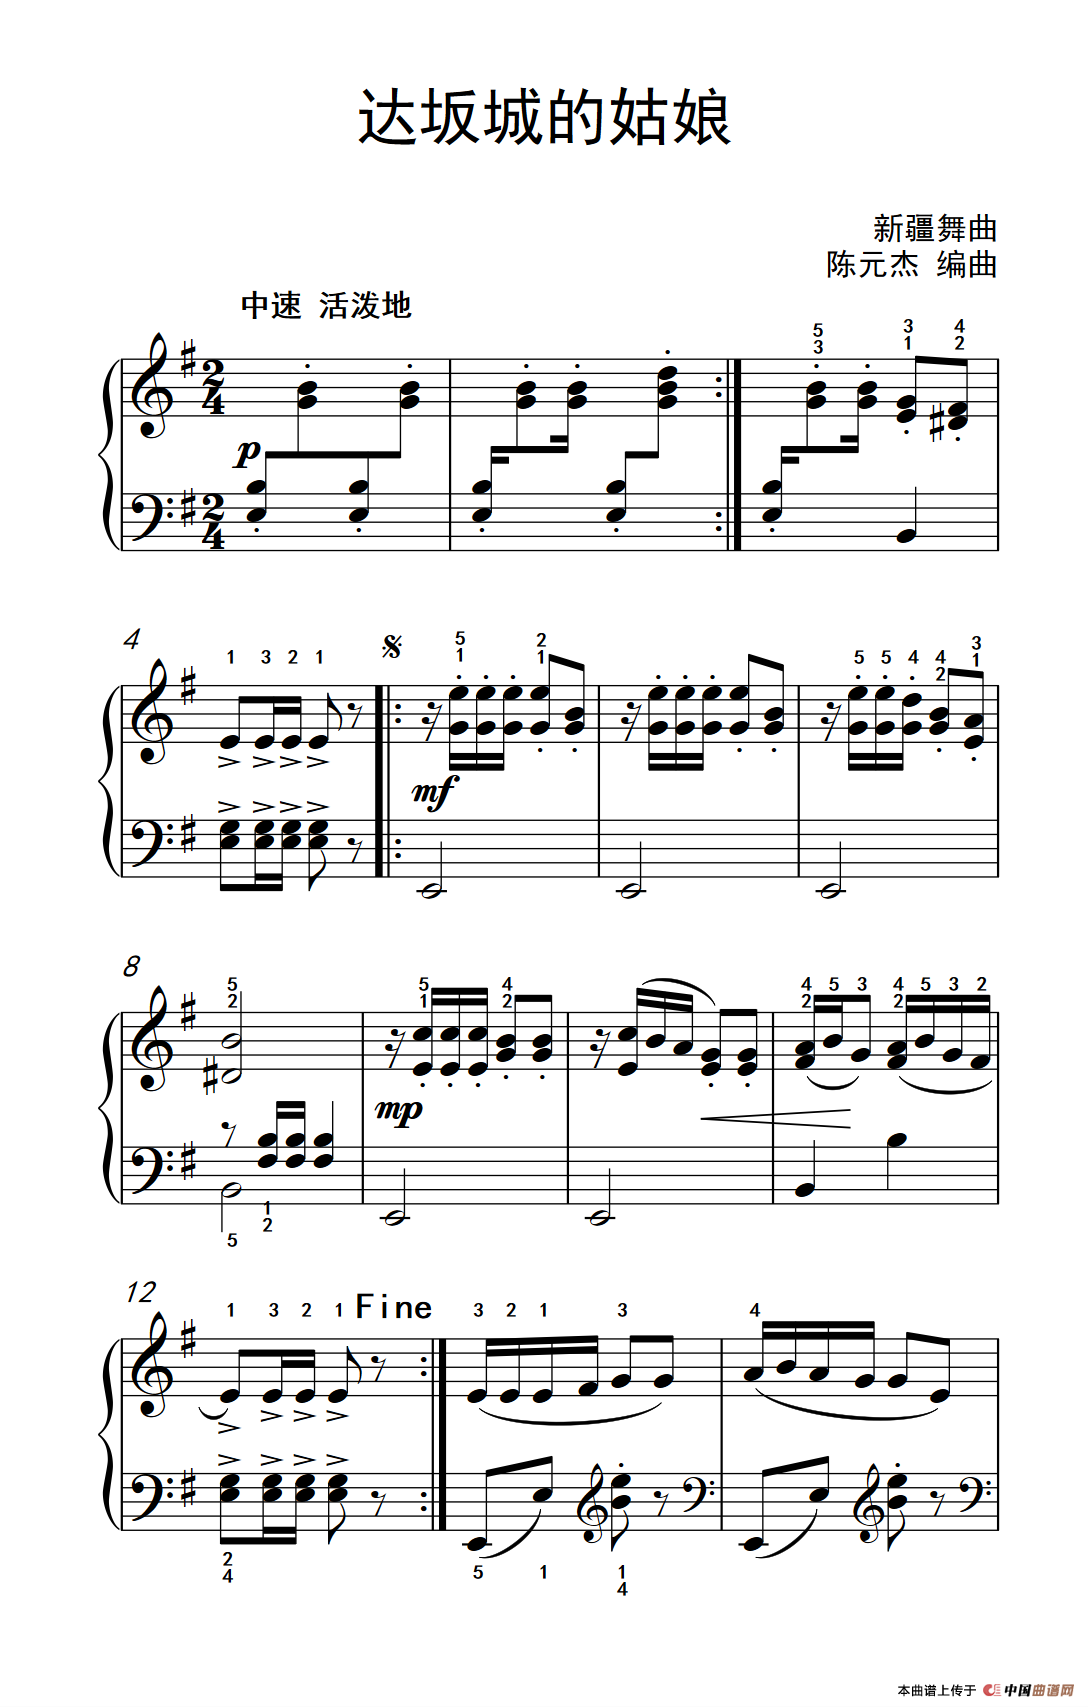 《达坂城的姑娘》钢琴曲谱图分享